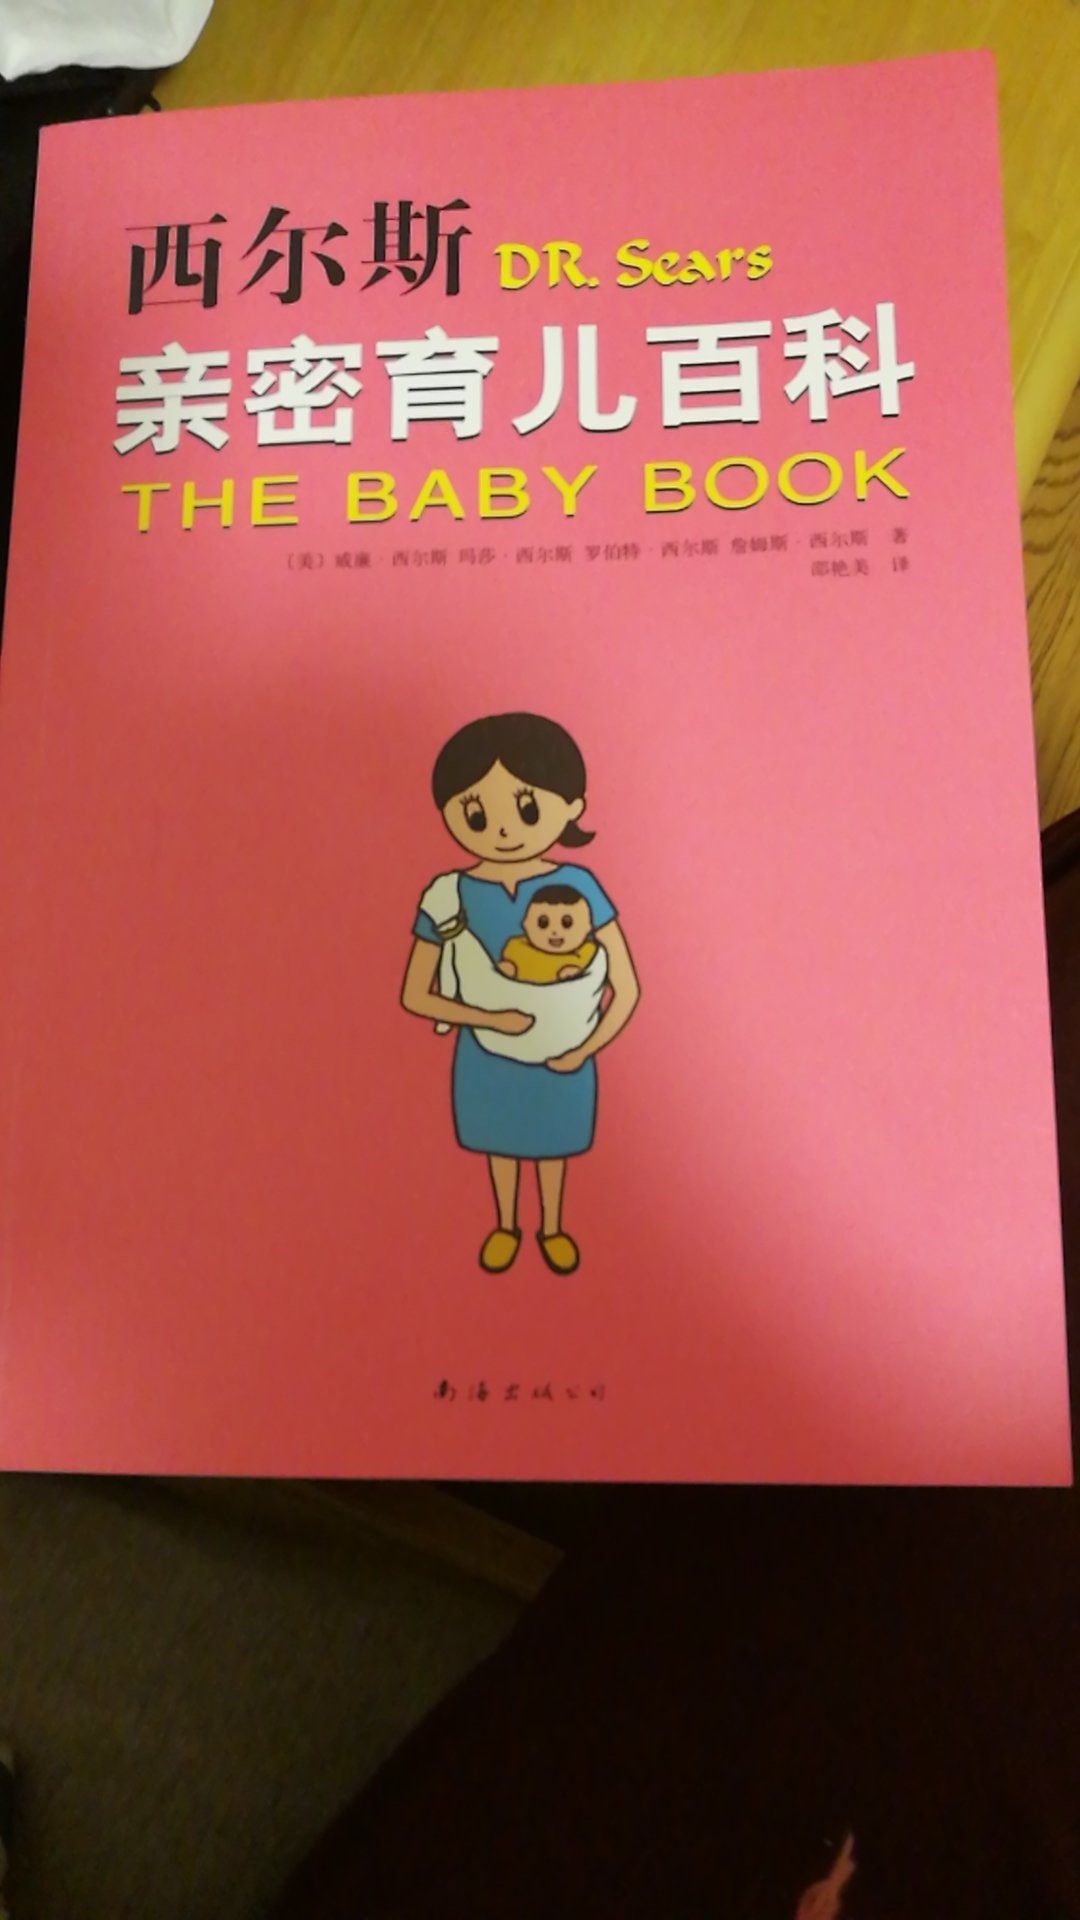 这本书很多人推荐，亲密育儿法应该学习学习，对养育小孩应该有好处